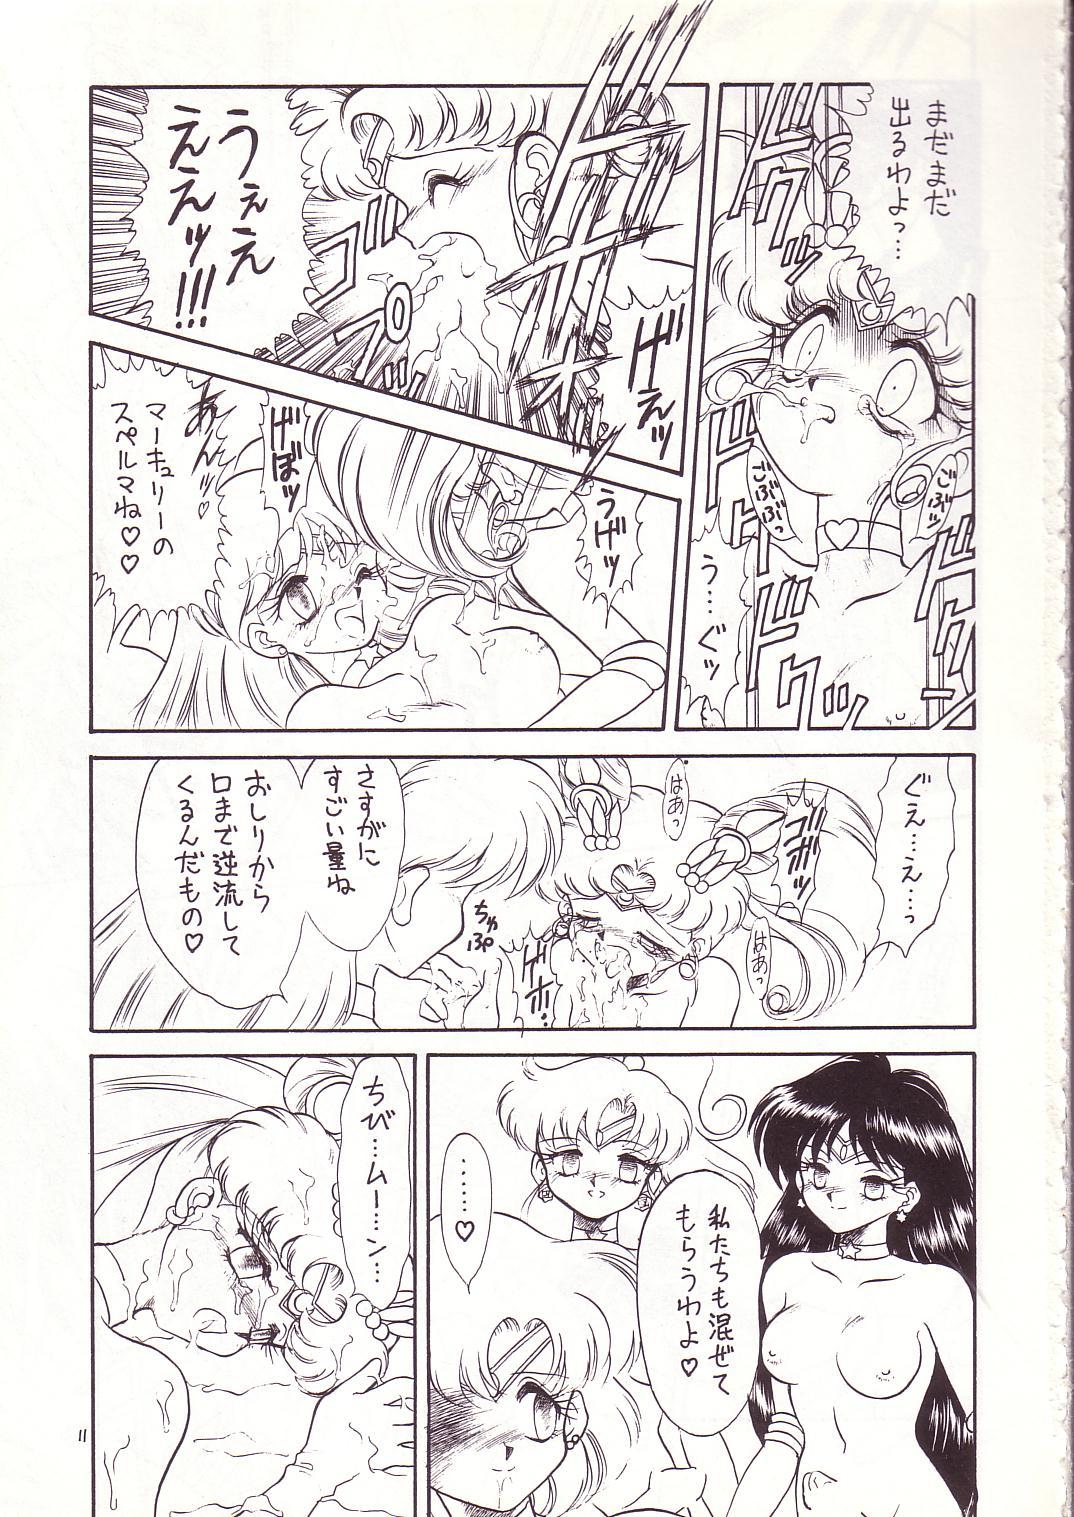 Movie Lolikko LOVE 4 - Sailor moon Akazukin cha cha Saint tail Seduction - Page 10